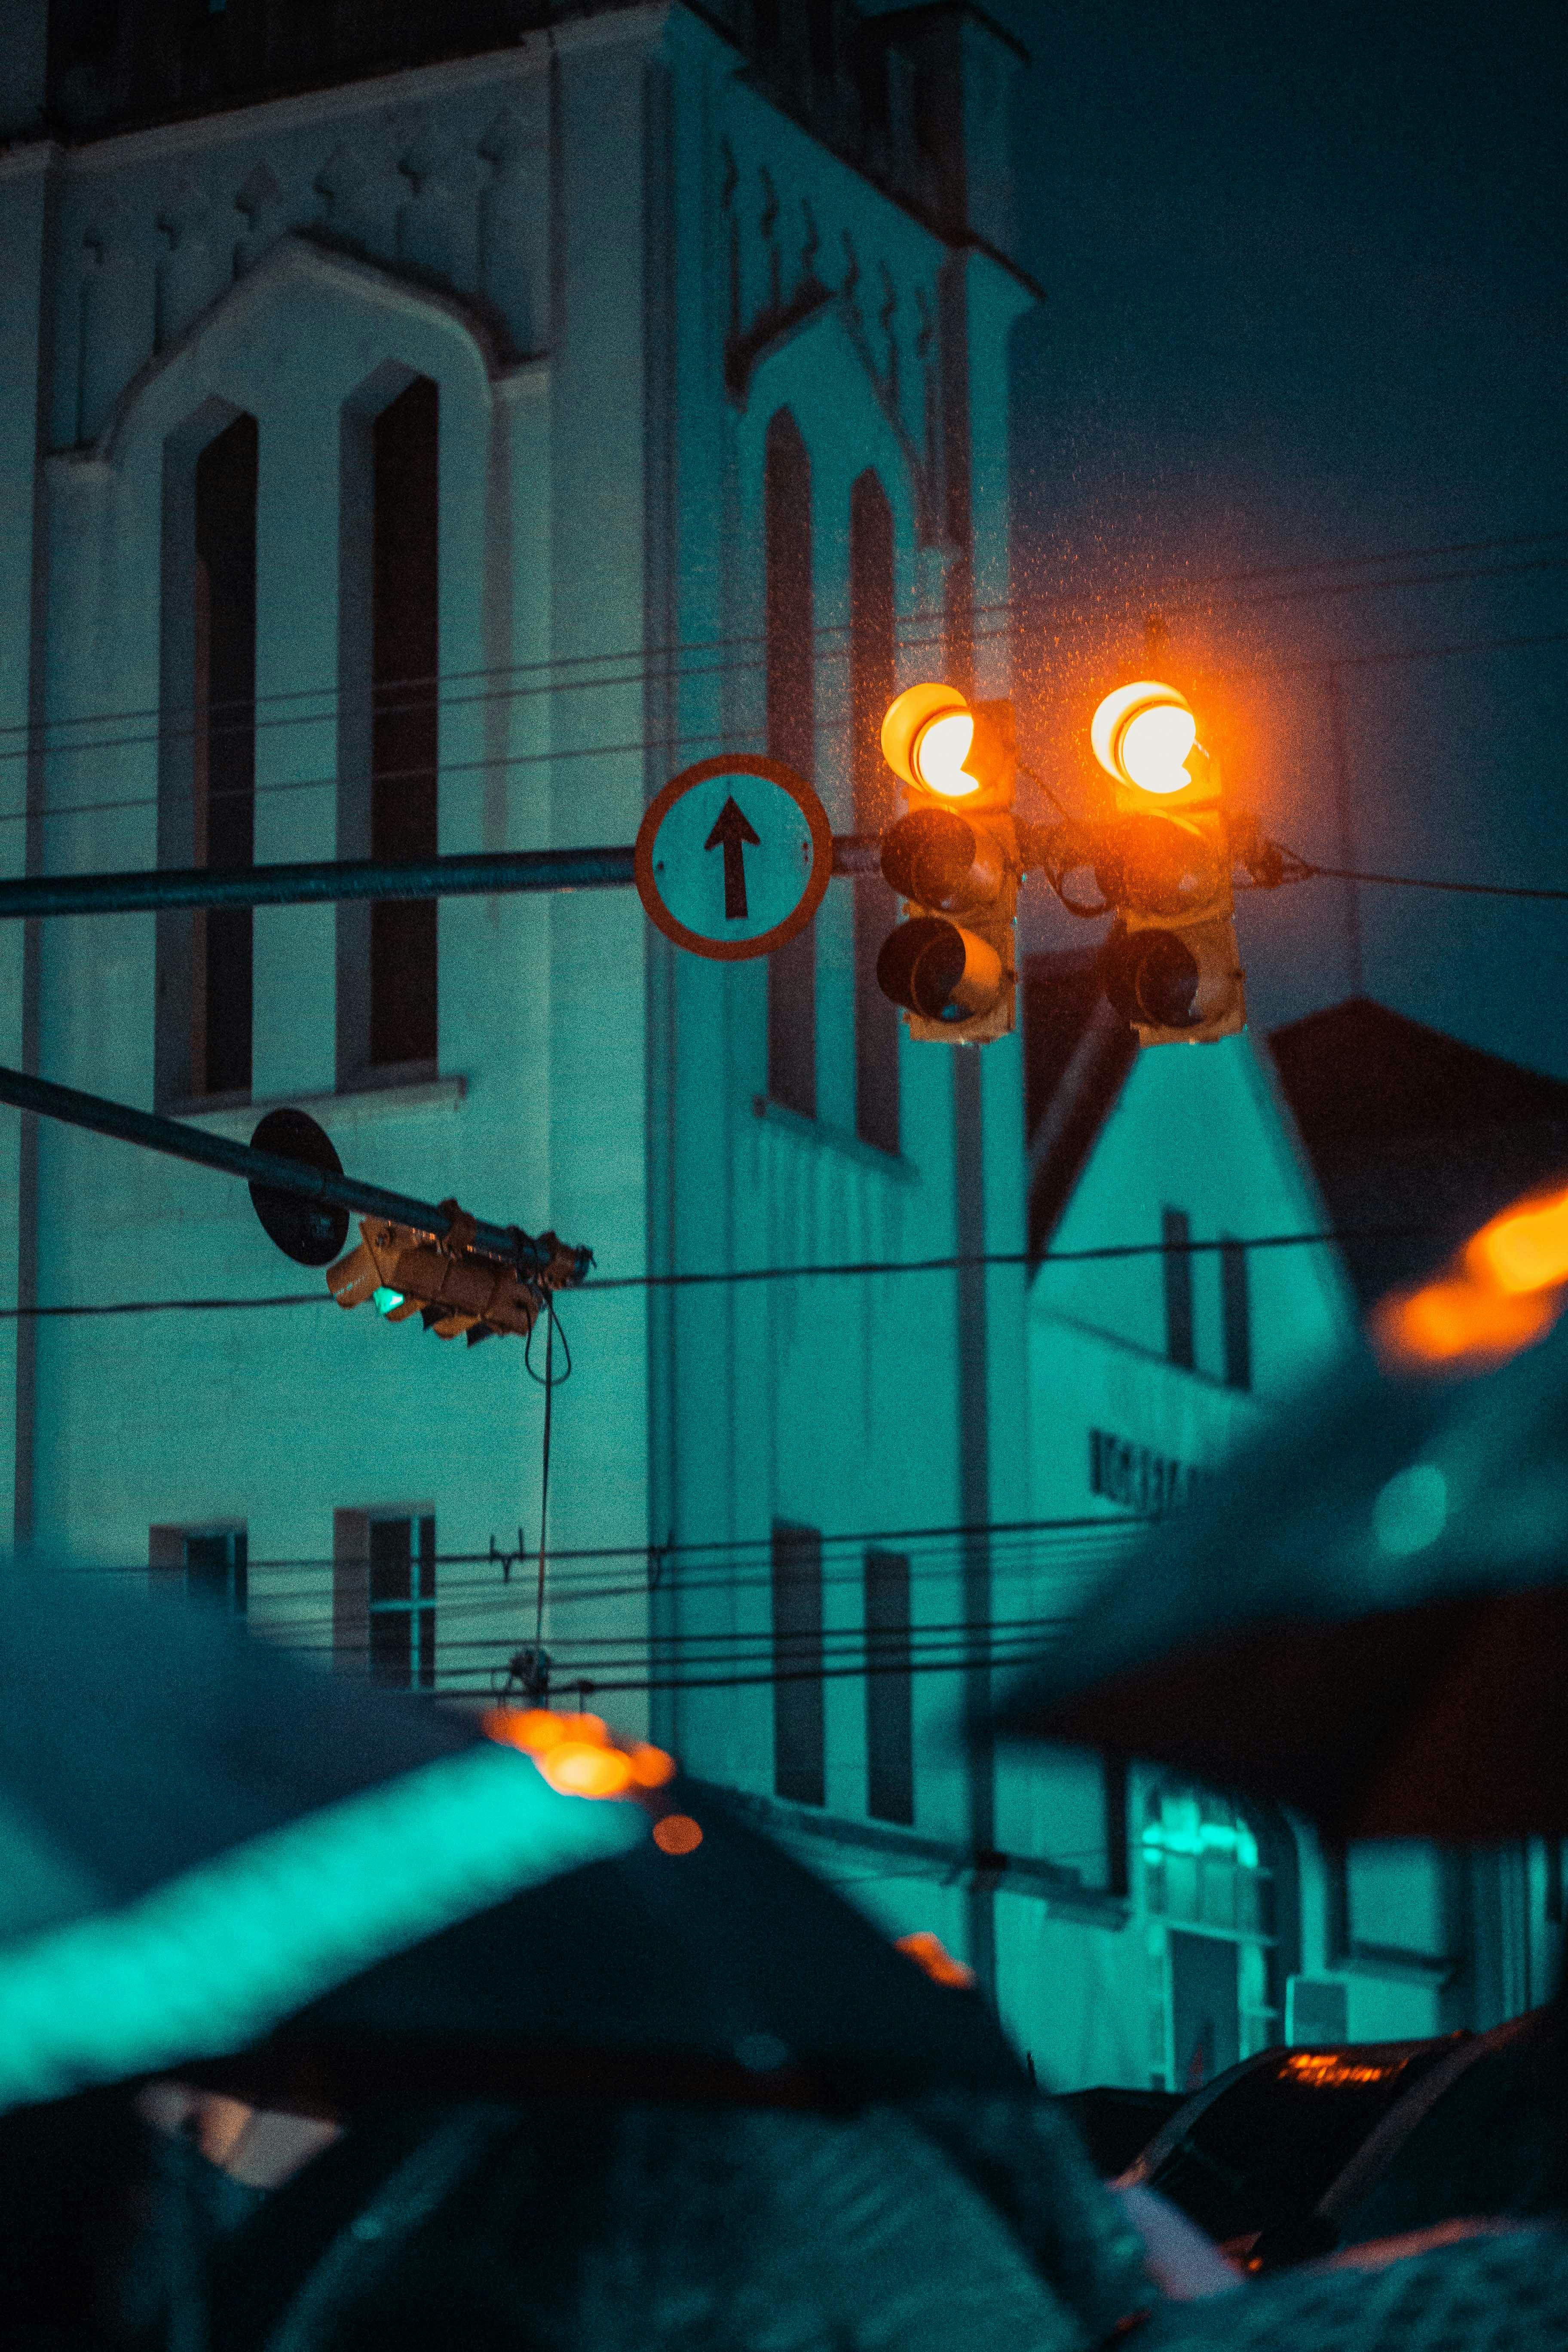 Traffic Light Photos - Bạn đam mê chụp ảnh và muốn tìm kiếm những bức ảnh độc đáo về đèn giao thông? Chúng tôi cung cấp bộ sưu tập các bức ảnh đẹp và khác nhau về đèn giao thông để bạn có thể khám phá và trải nghiệm.